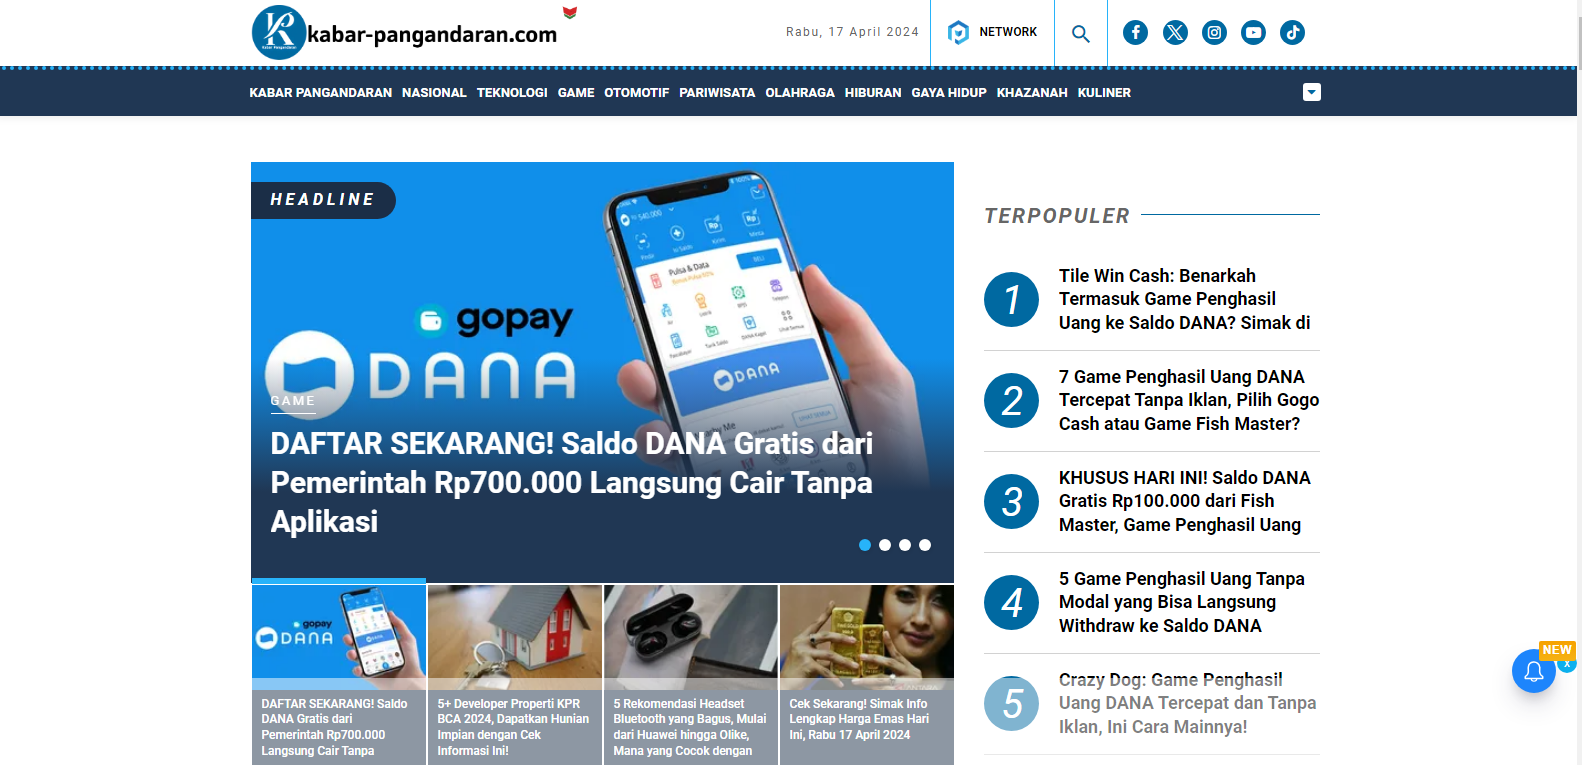 Menjadi Content Writer di Kabar Pangandaran bisa mendapatkan uang dan saldo DANA gratis